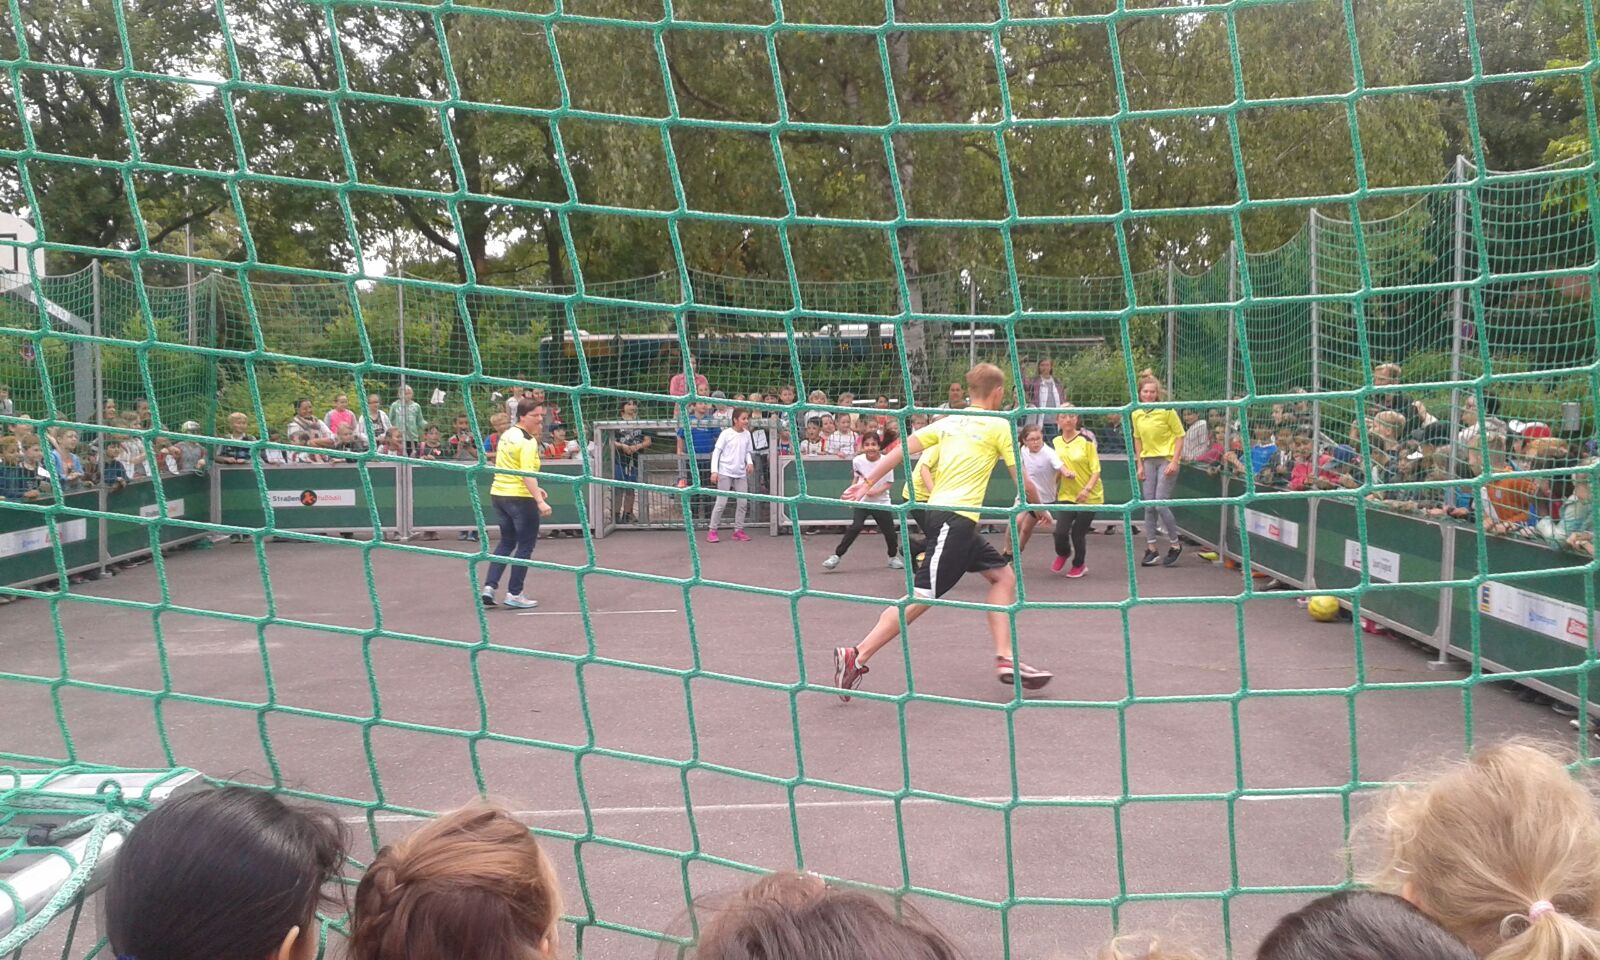 Sportfest mit Soccer Court, Völkerball und Spaßstationen